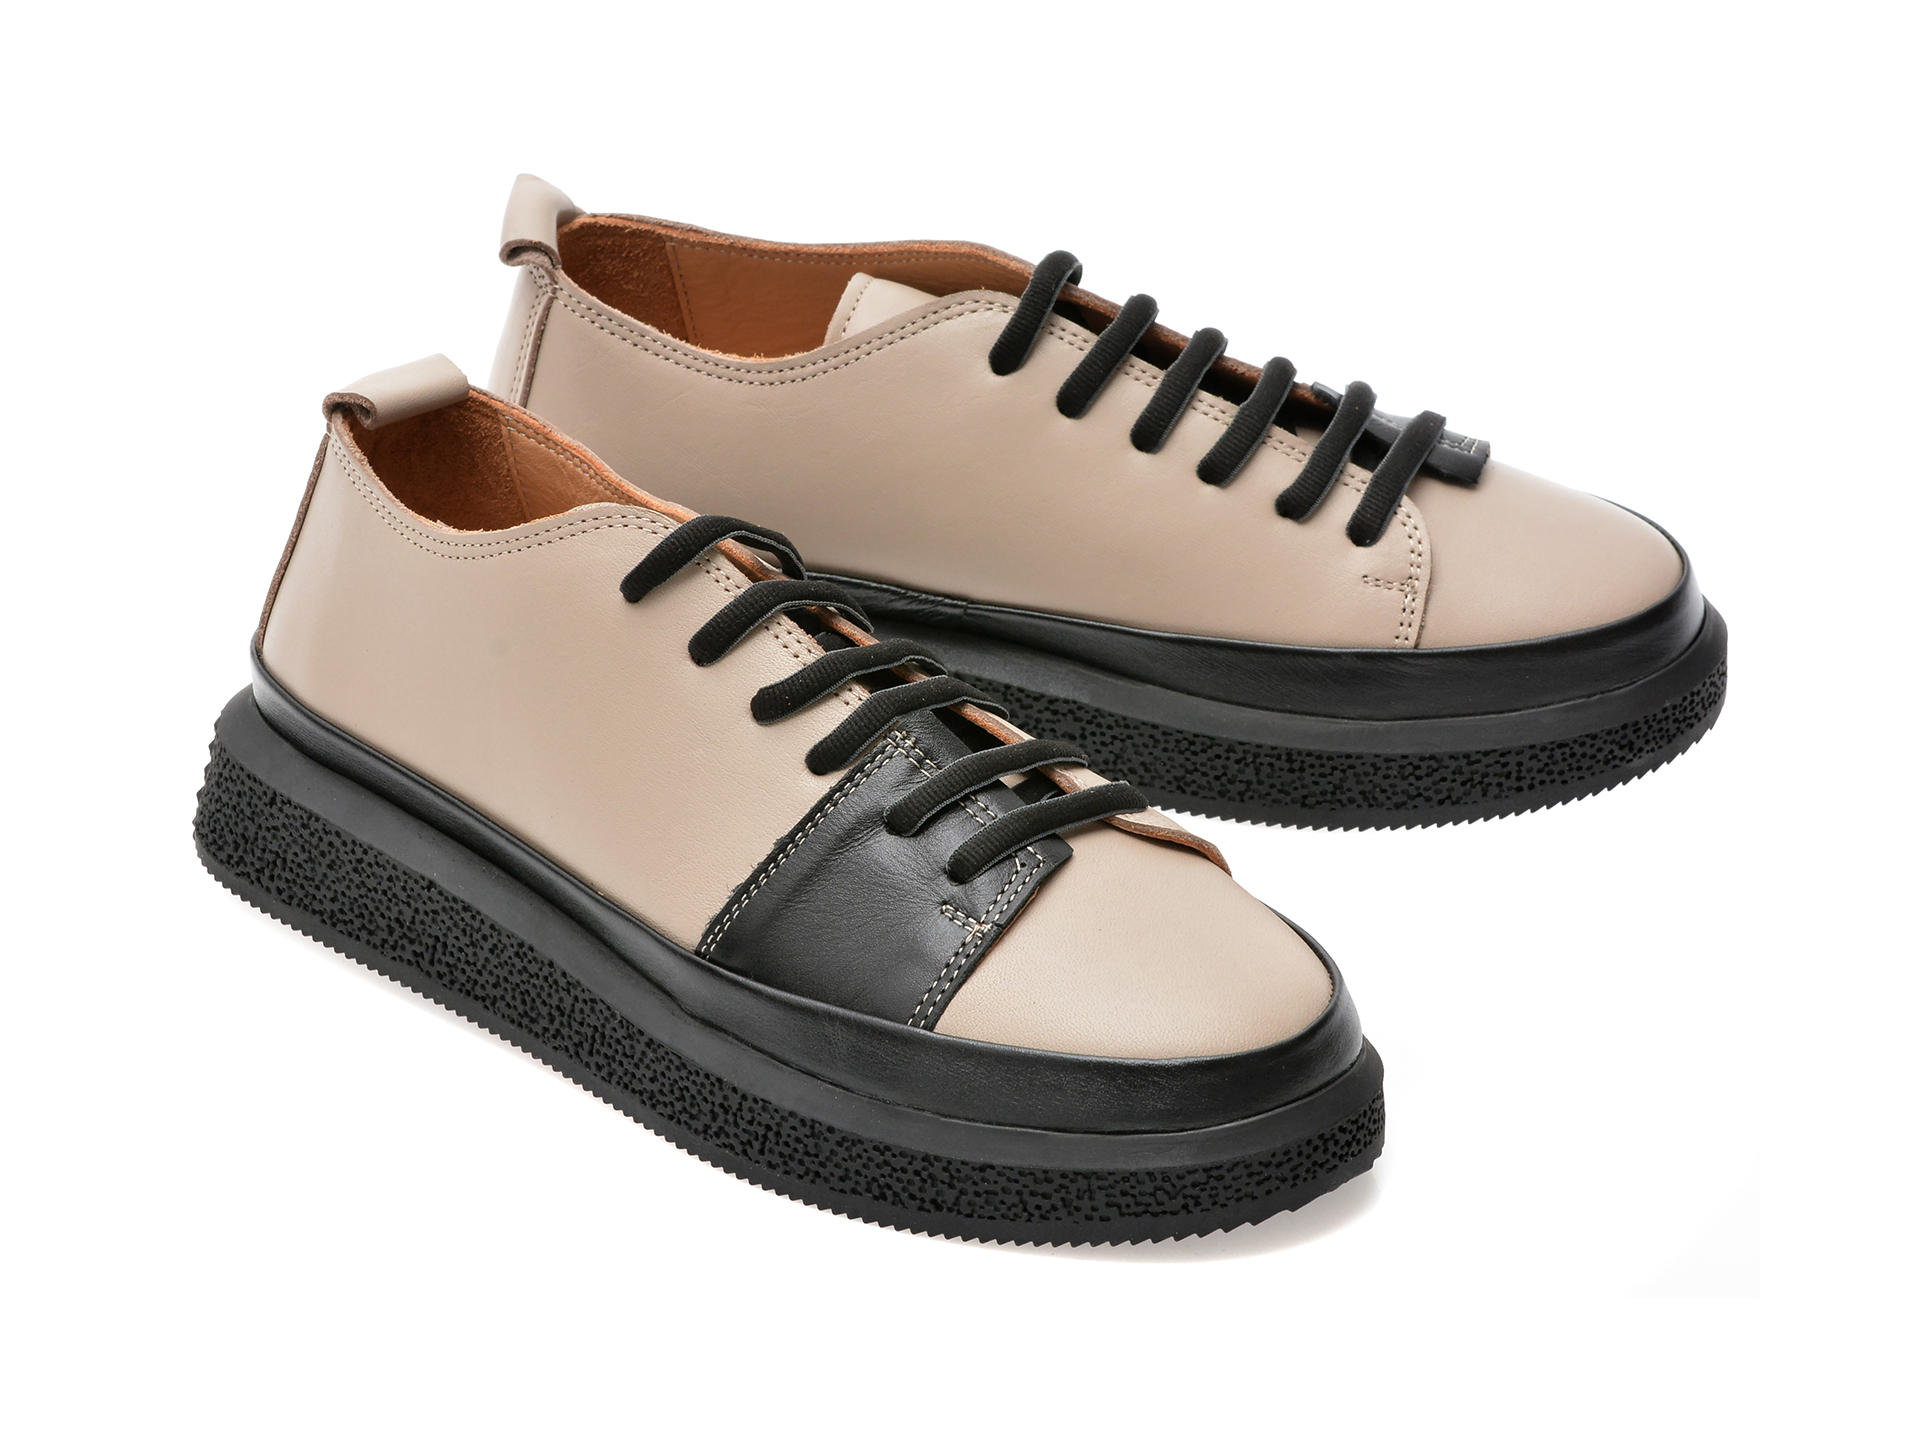 Comandă Încălțăminte Damă, la Reducere  Pantofi GRYXX gri, 431300, din piele naturala Branduri de top ✓